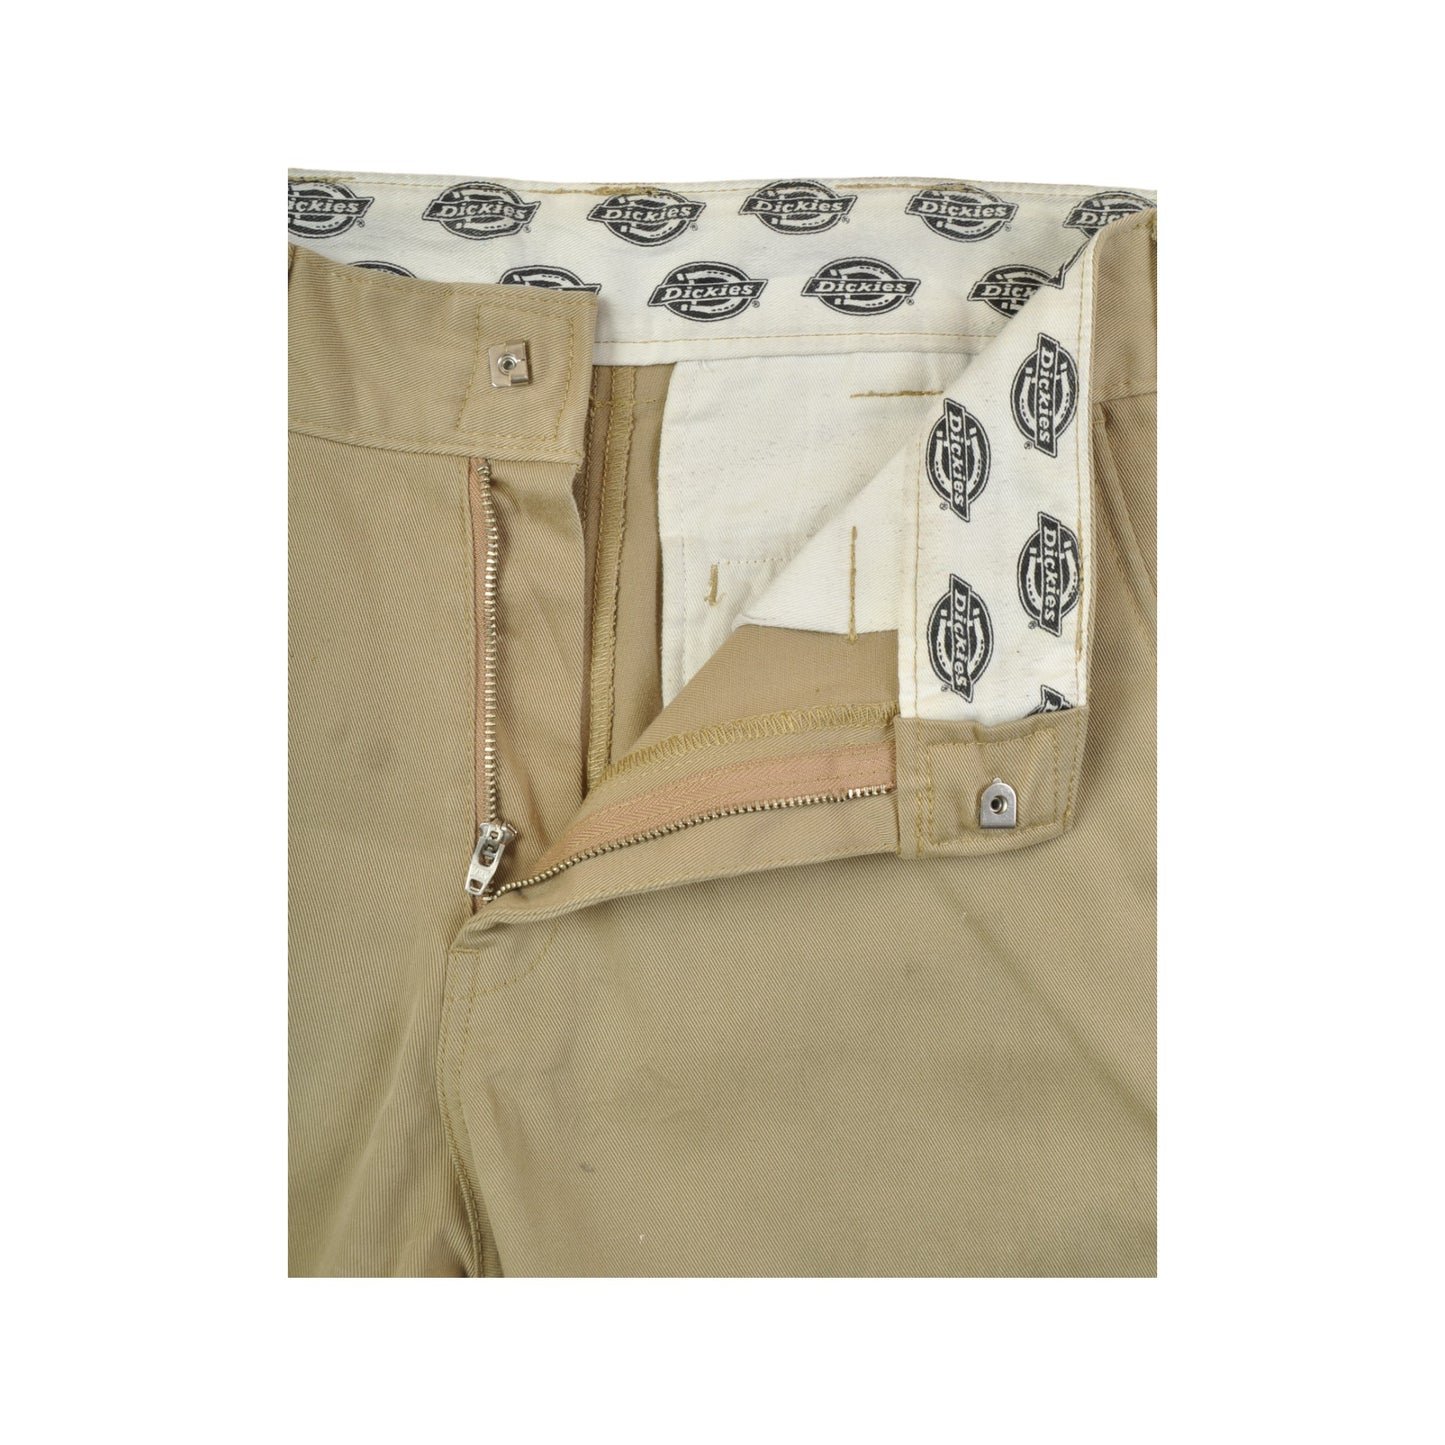 Vintage Dickies Workwear Pants Slim Fit Beige W32 L30